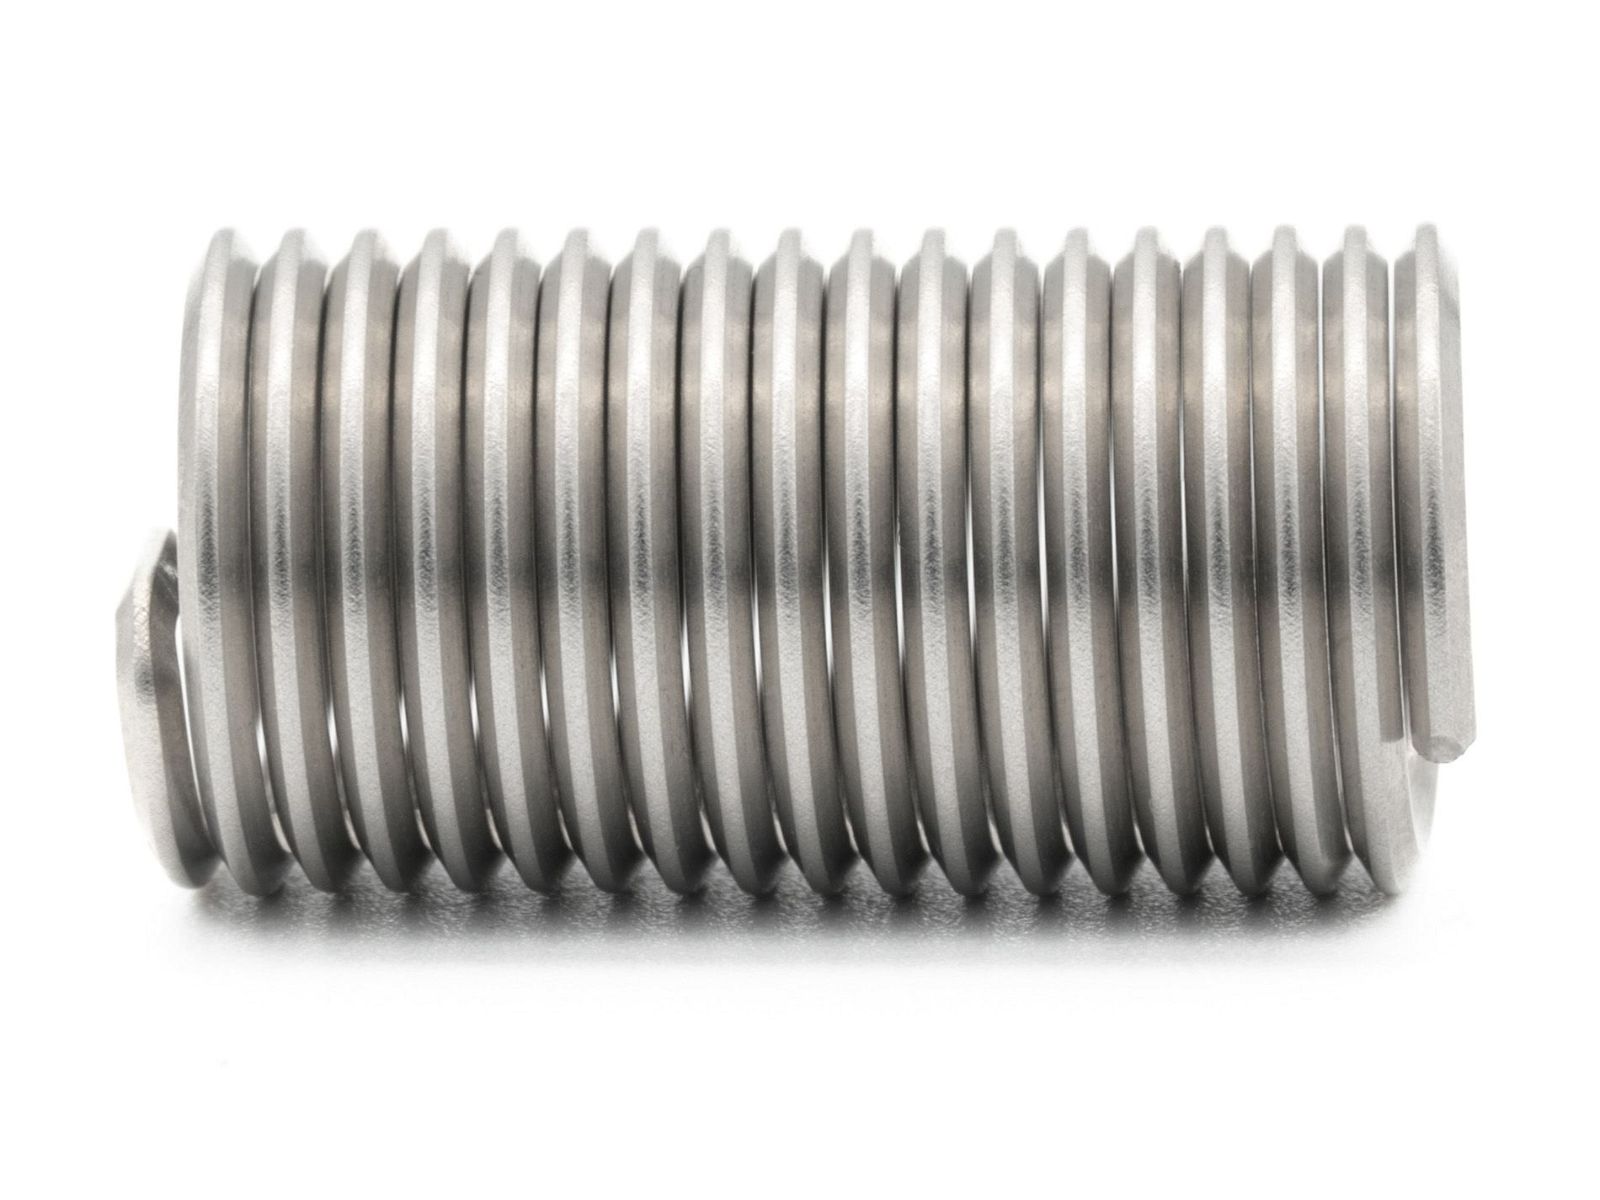 BaerCoil Wire Thread Inserts UNF 5/8 x 18 - 3.0 D (47.63 mm) - free running - 50 pcs.